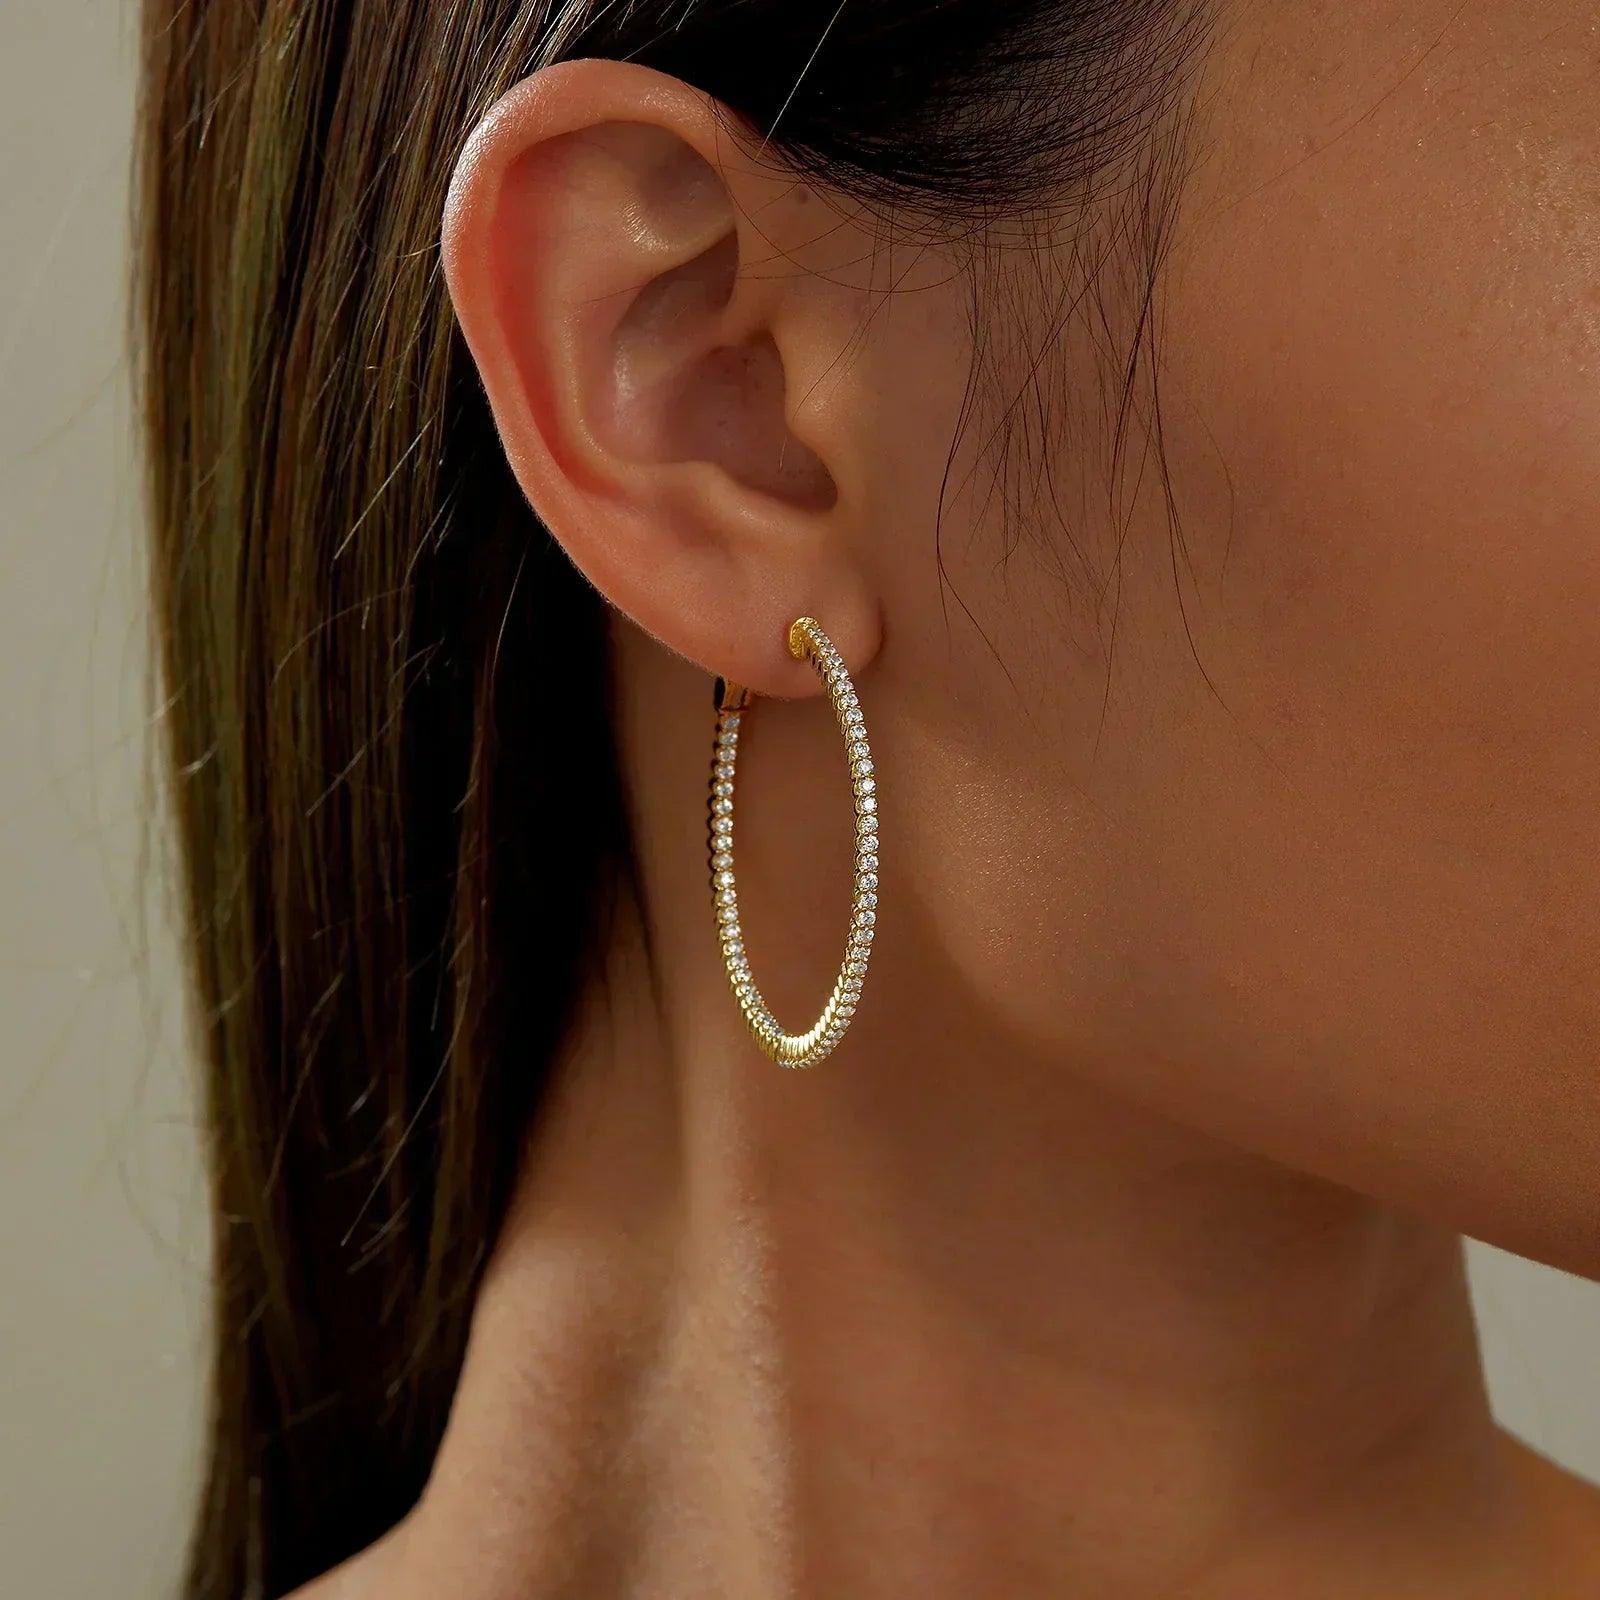  Large Hoop Earrings Gold